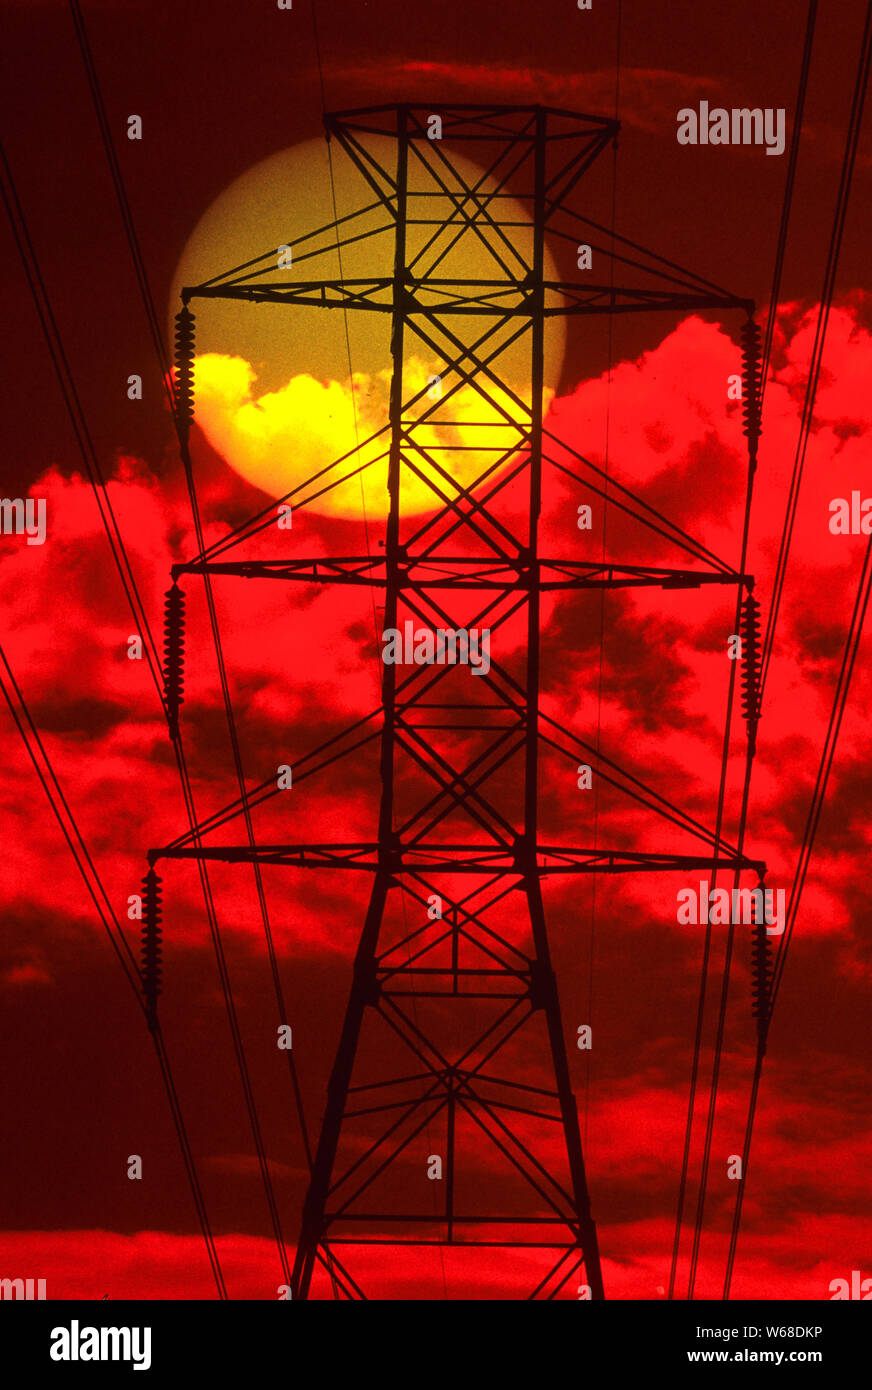 Le soleil de l'après-midi, telle que perçue par certaines lignes à haute tension électrique (photogrphed à travers un filtre rouge) Banque D'Images